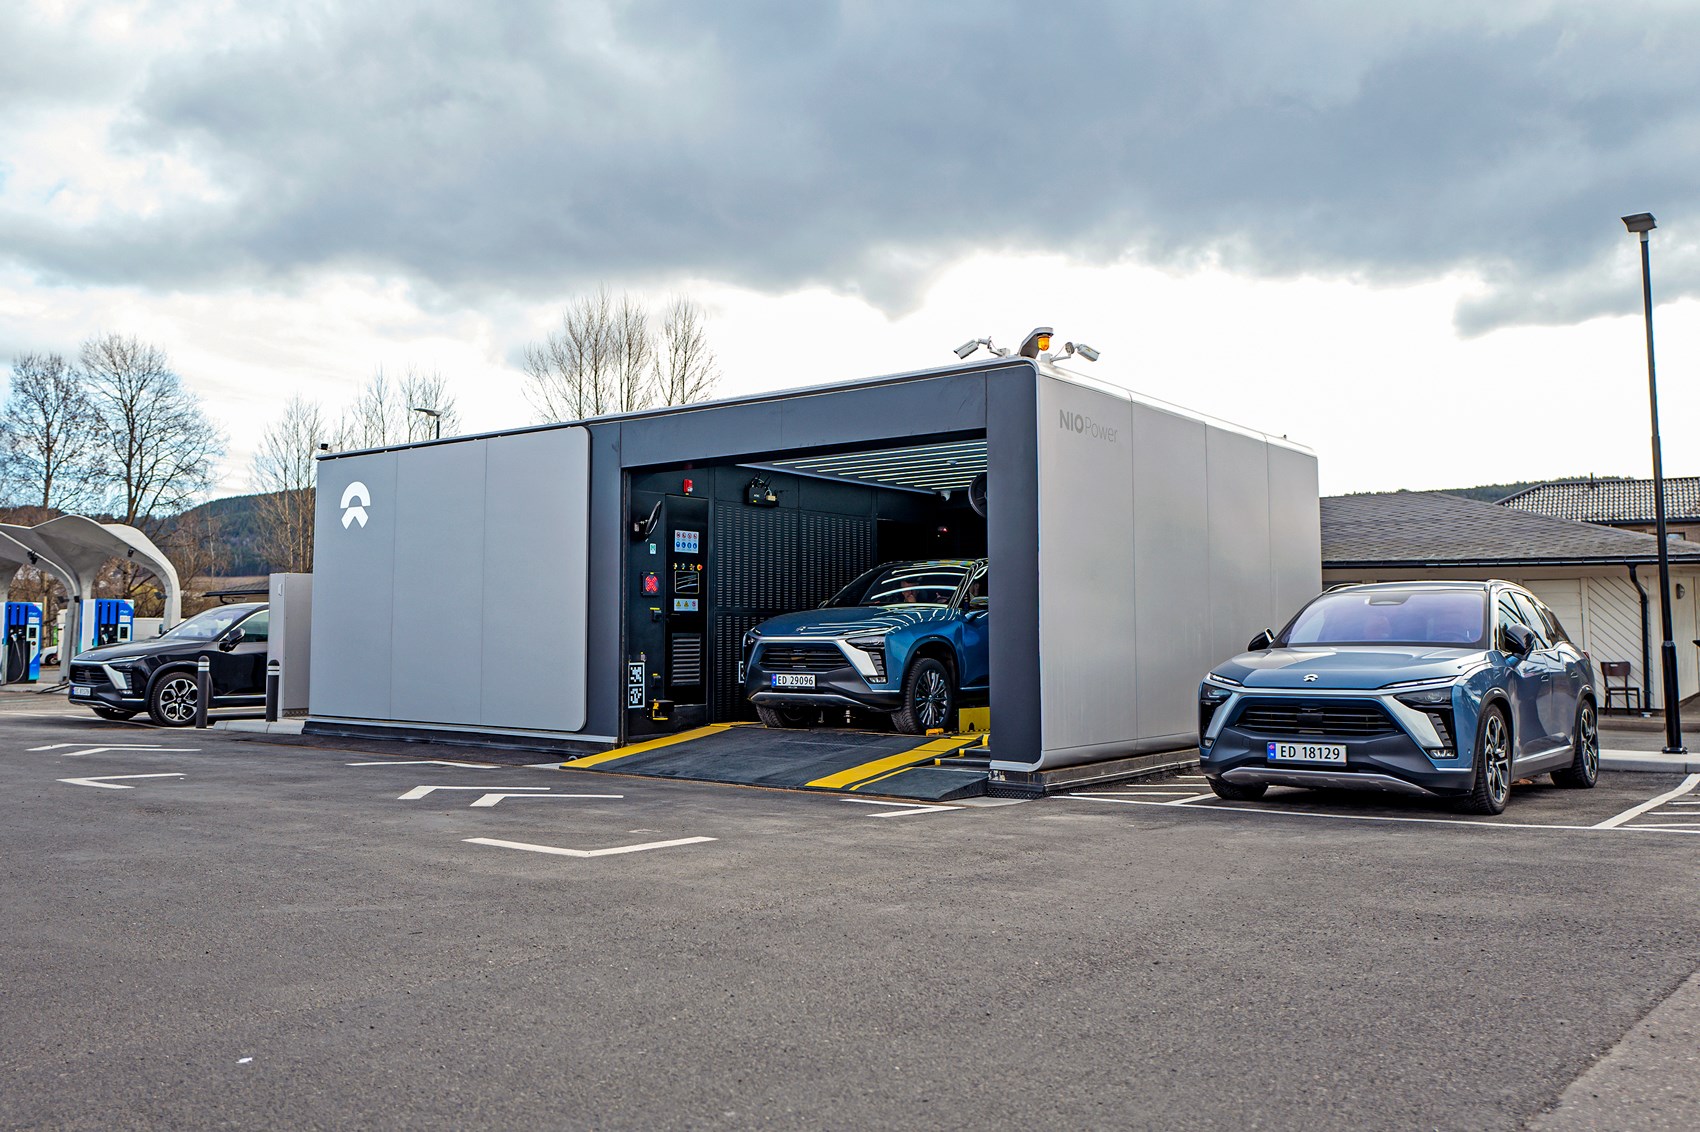 NIO en Shell lanceren Europa's eerste batterijwisselstation voor elektrische auto's